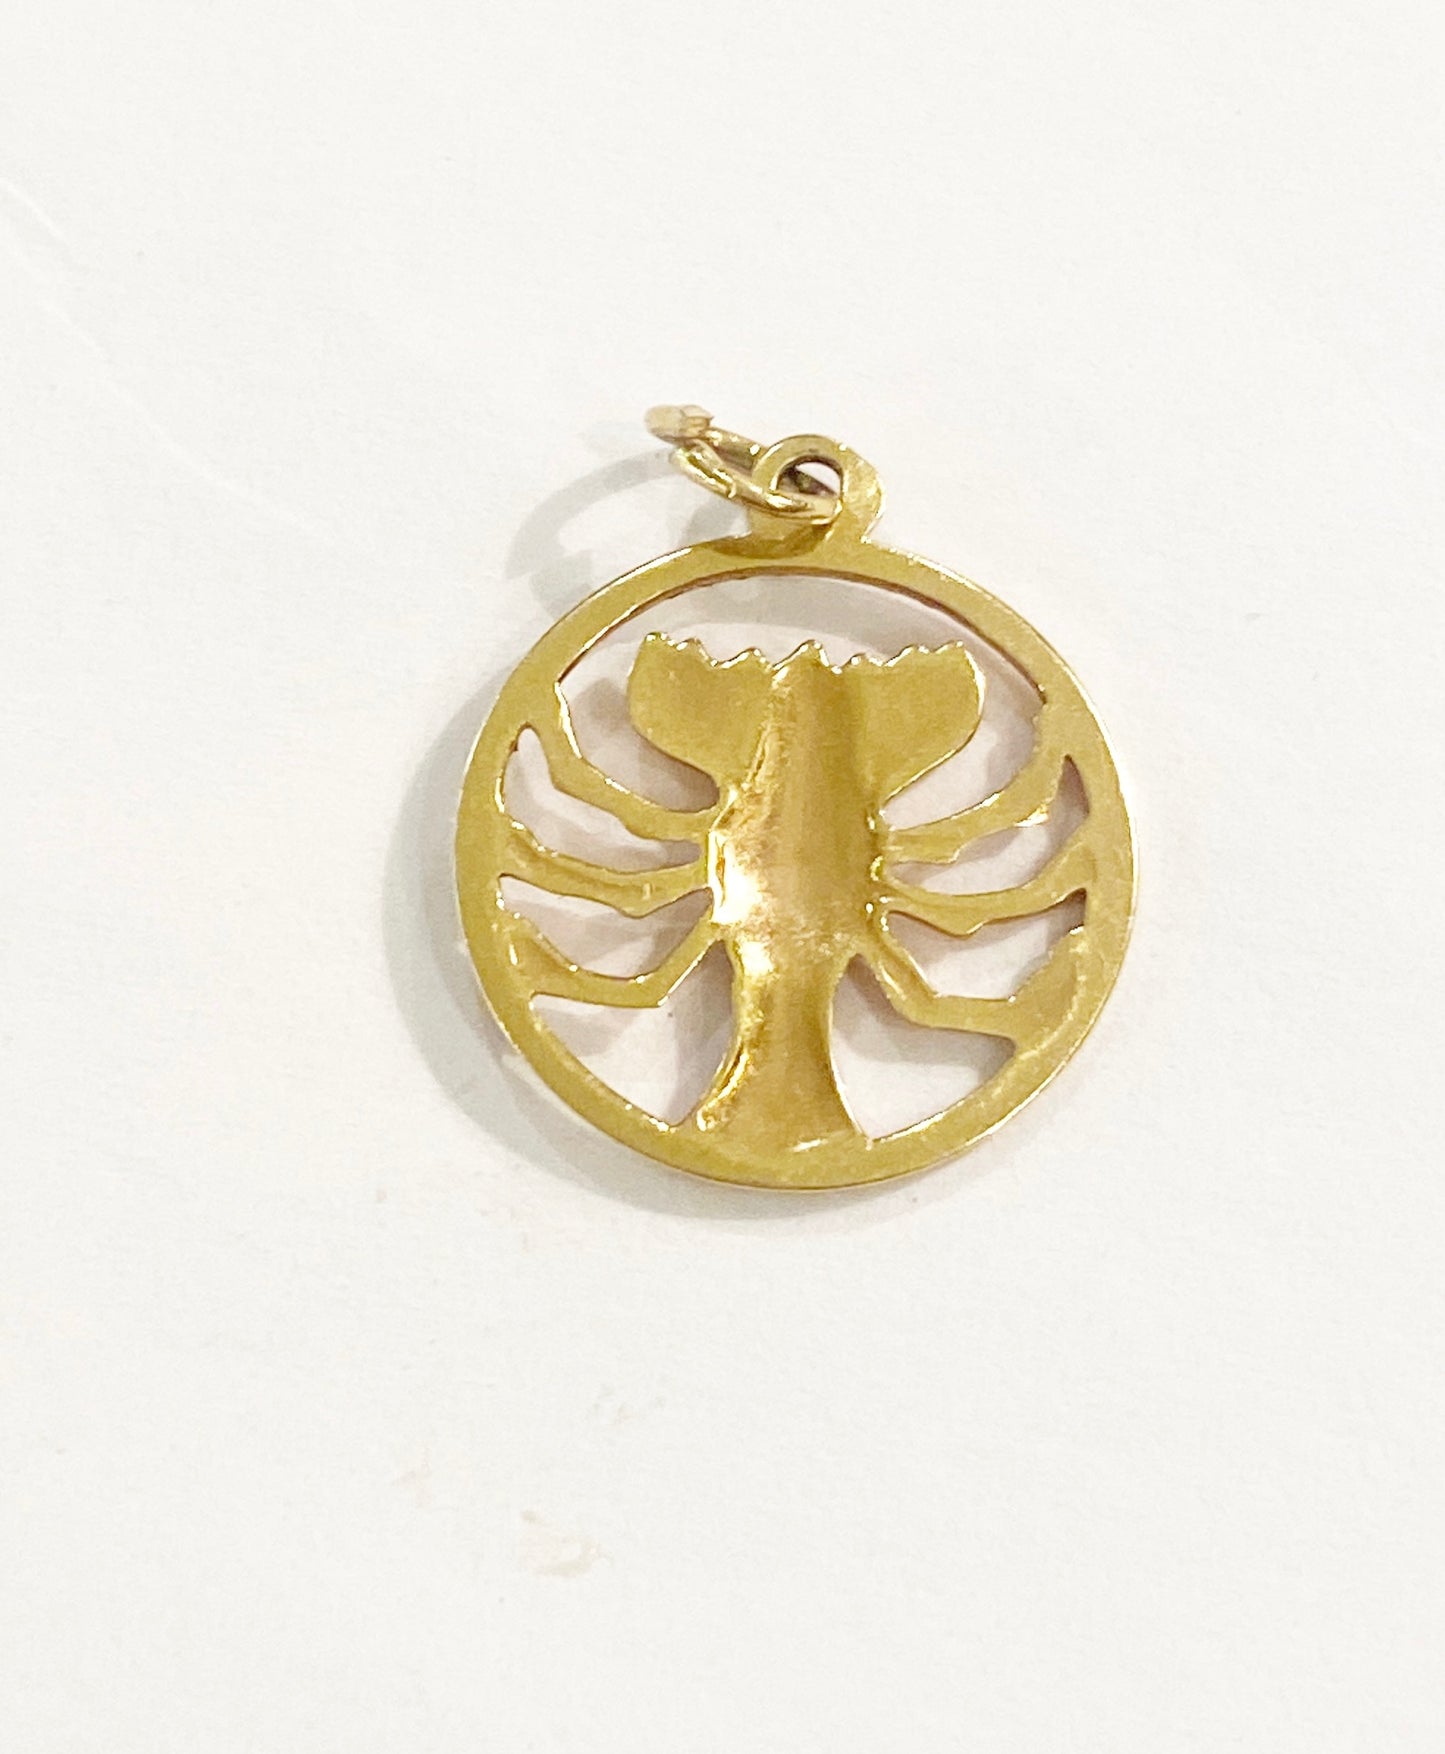 18ct 750 vintage scorpio charm / pendant